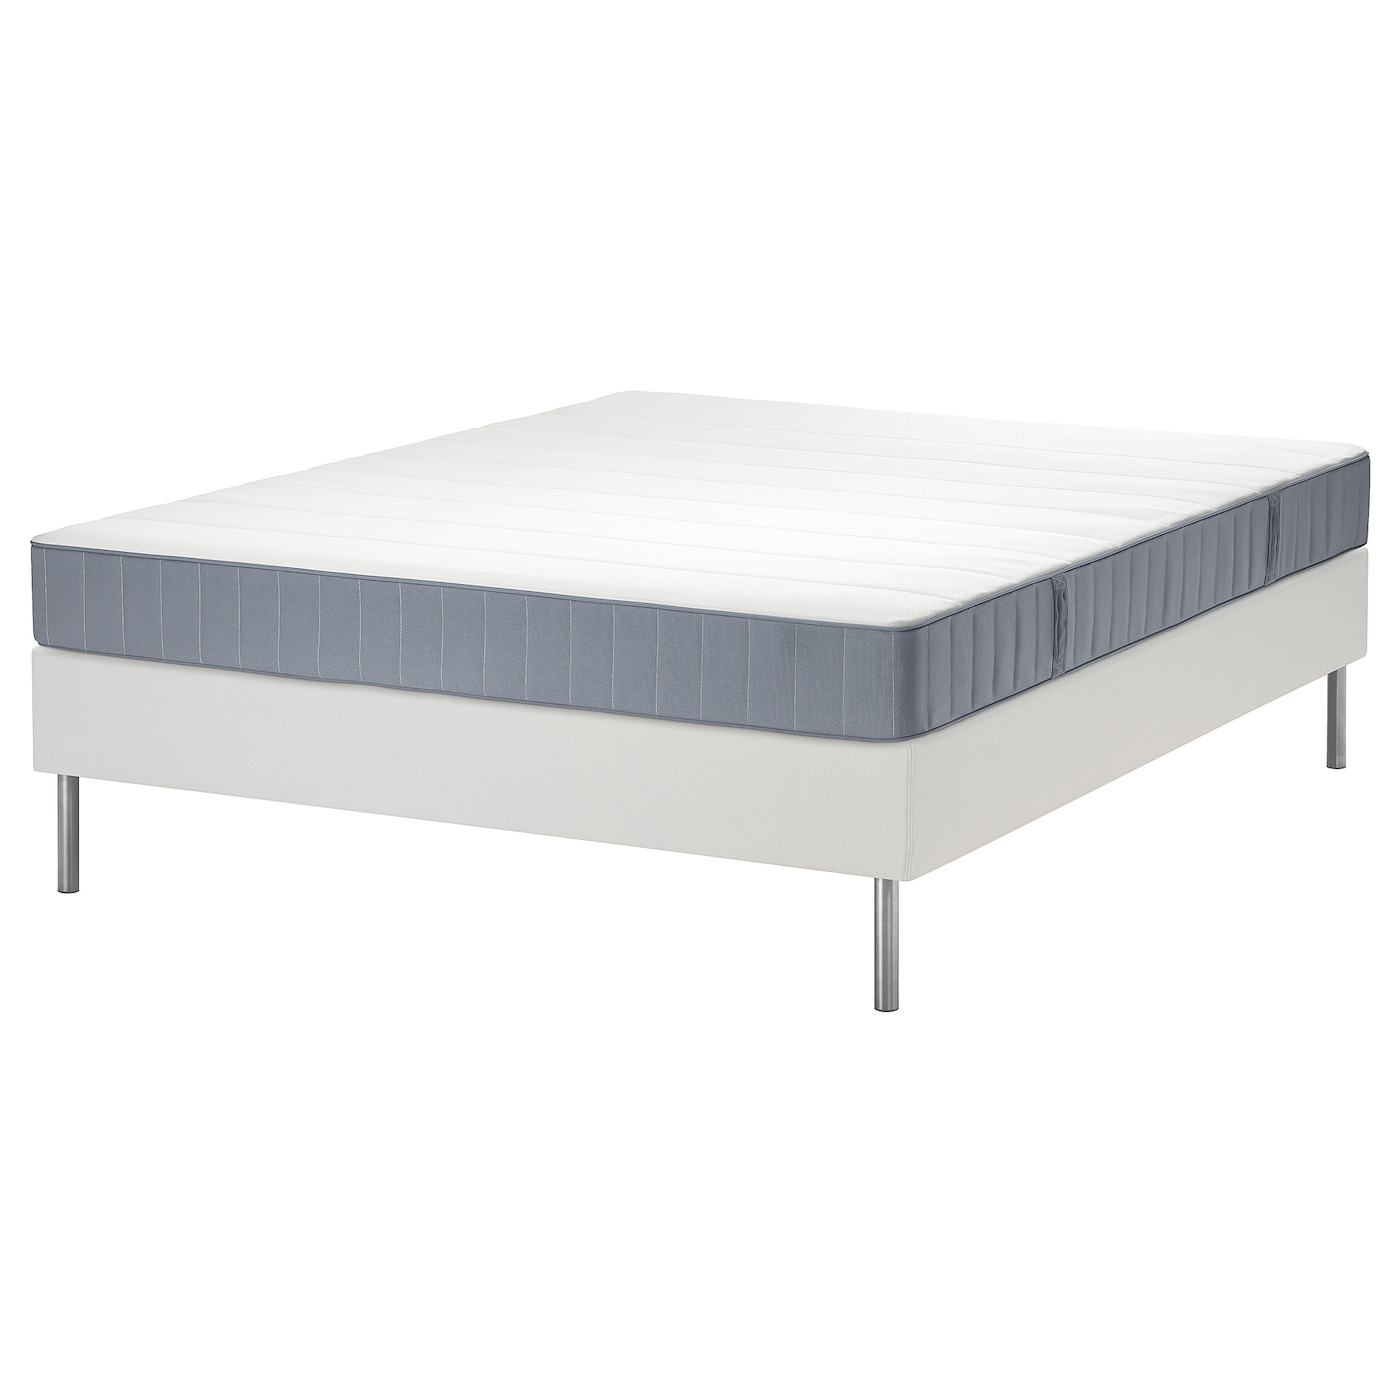 Кровать - LYNGÖR / LYNGОR IKEA/ ЛЮНГЕРЬ ИКЕА,  160х200 см, белый